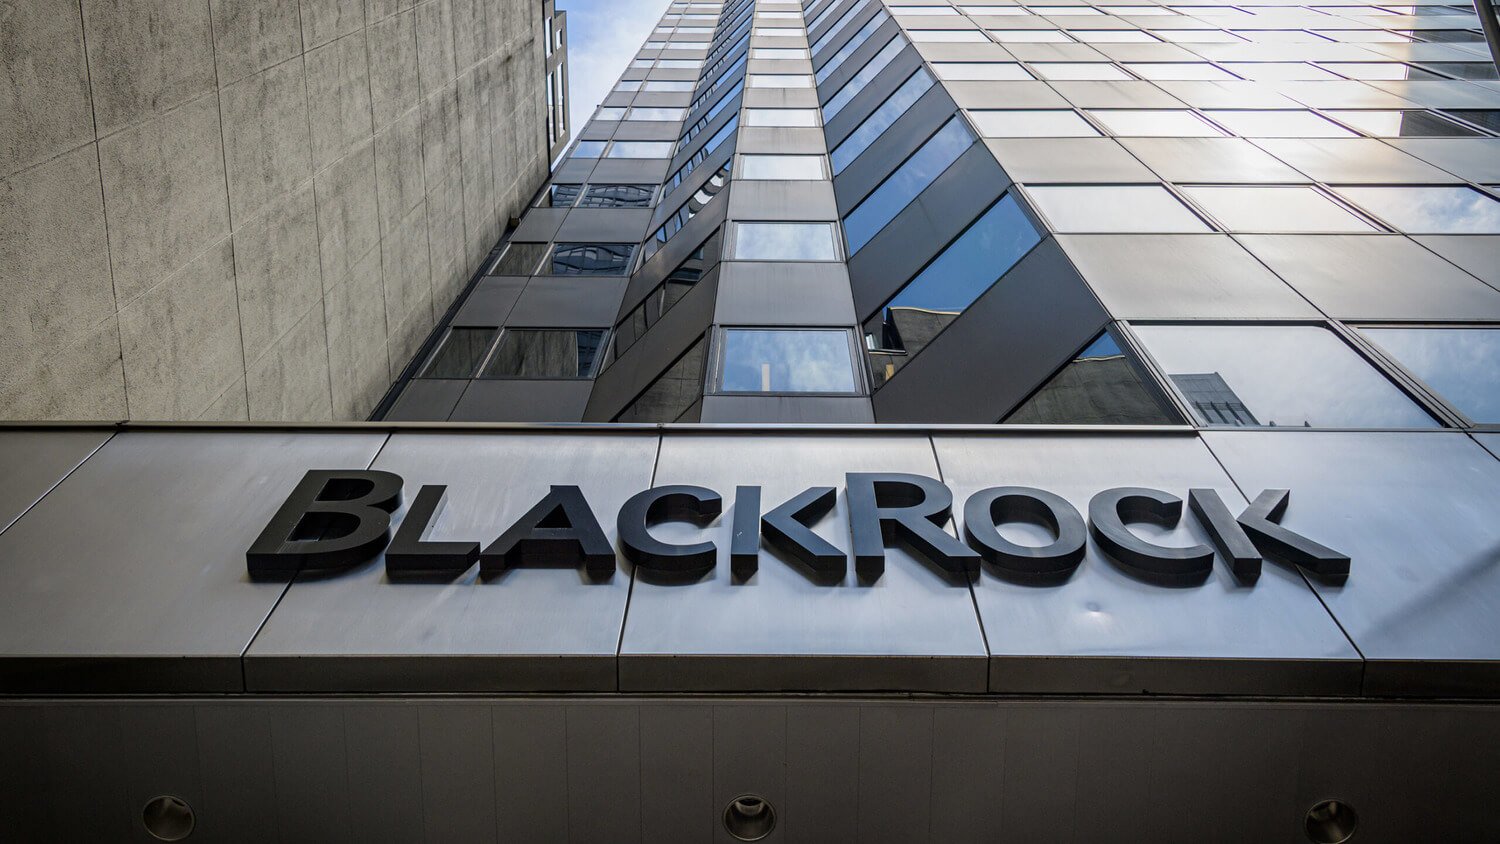 КРИПТОЖМЫХ / Приговор для Чанпена Чжао, борьба SEC с Эфириумом и признание блокчейна сотрудниками BlackRock. BlackRock делает ставку на токенизацию обычных активов. Что это значит для рынка криптовалют? Фото.